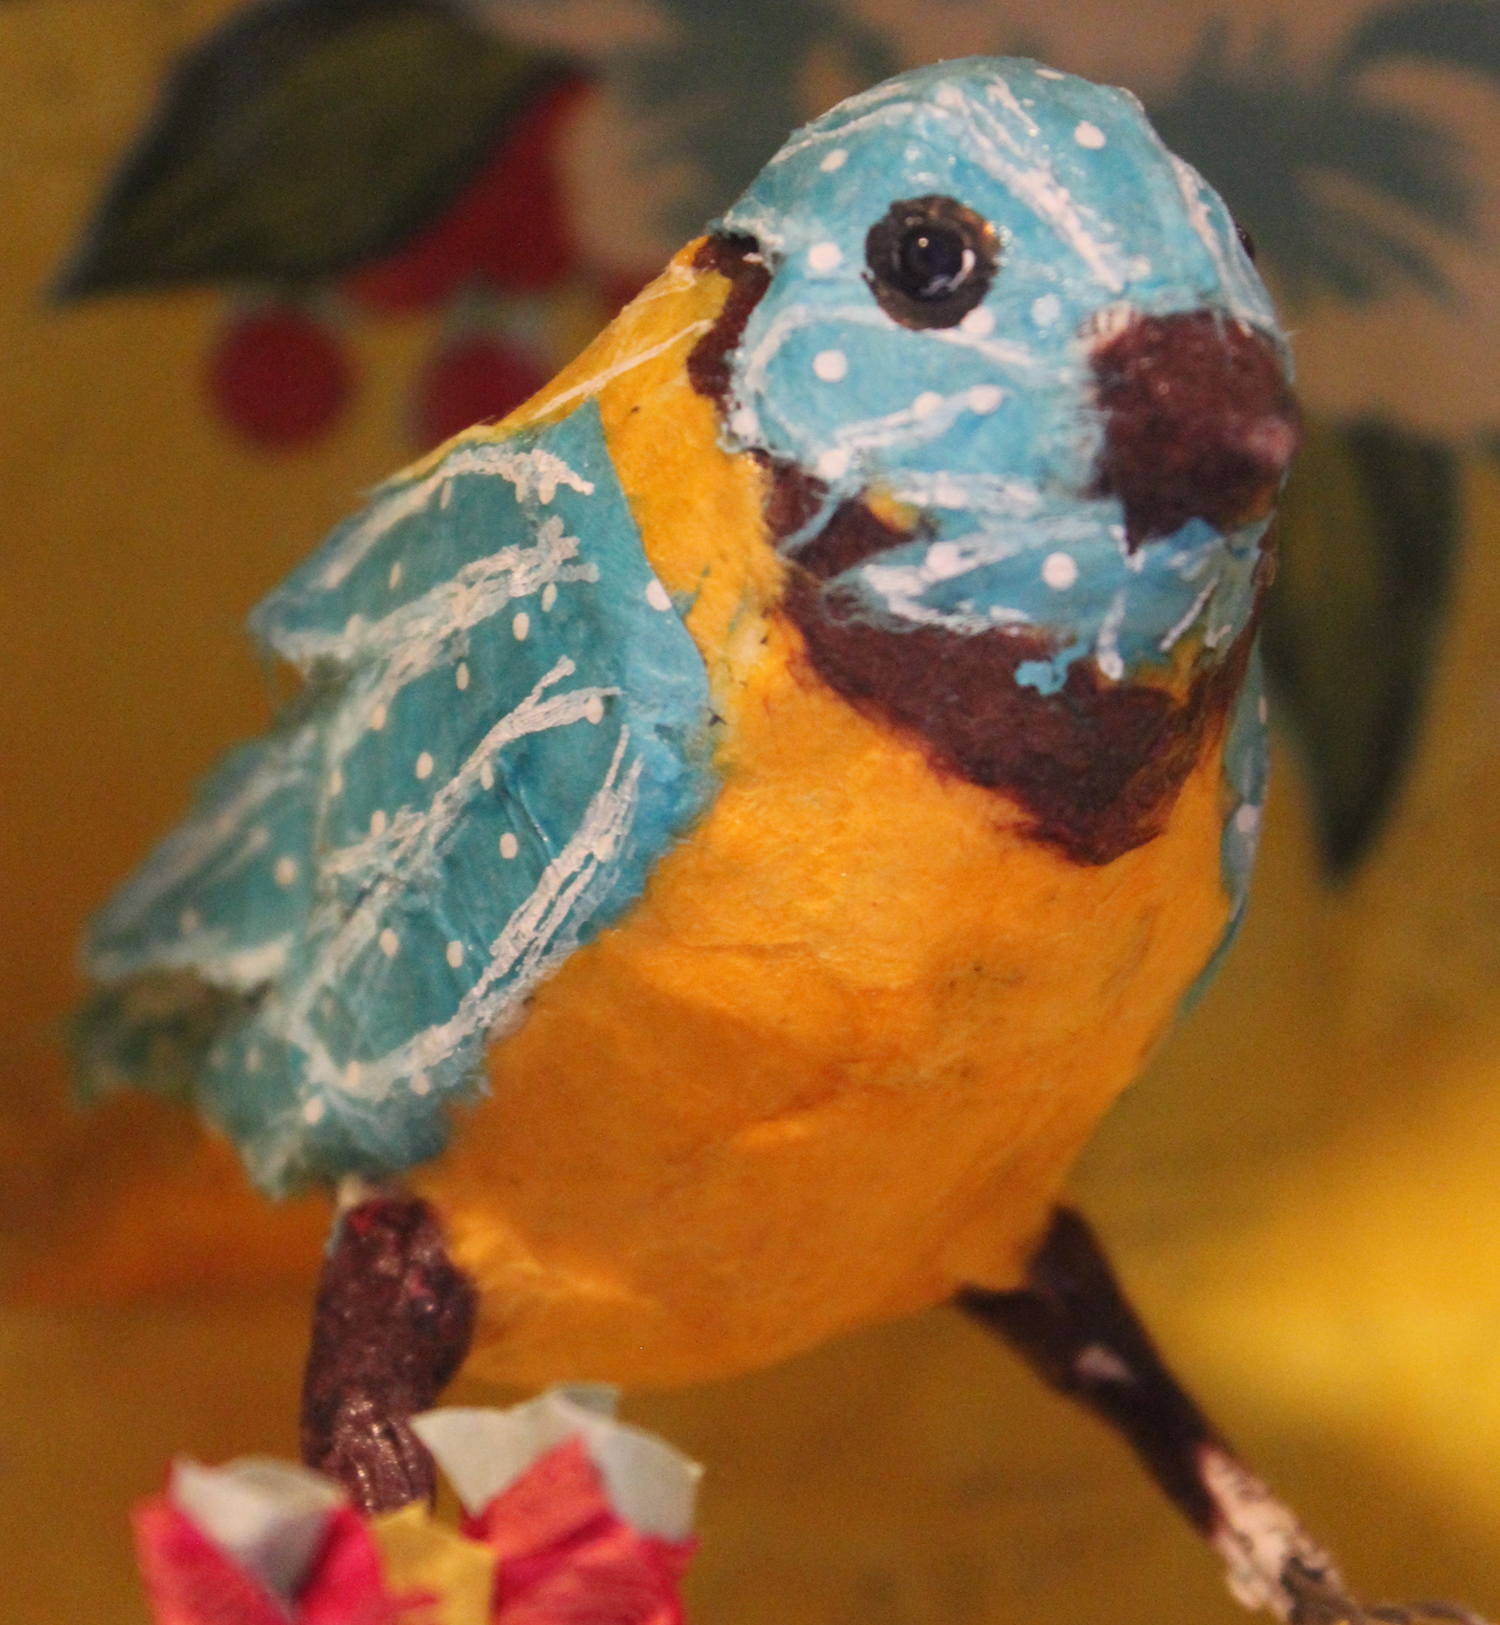 Création de sculpture en papier mâché l’oiseau dans son nid